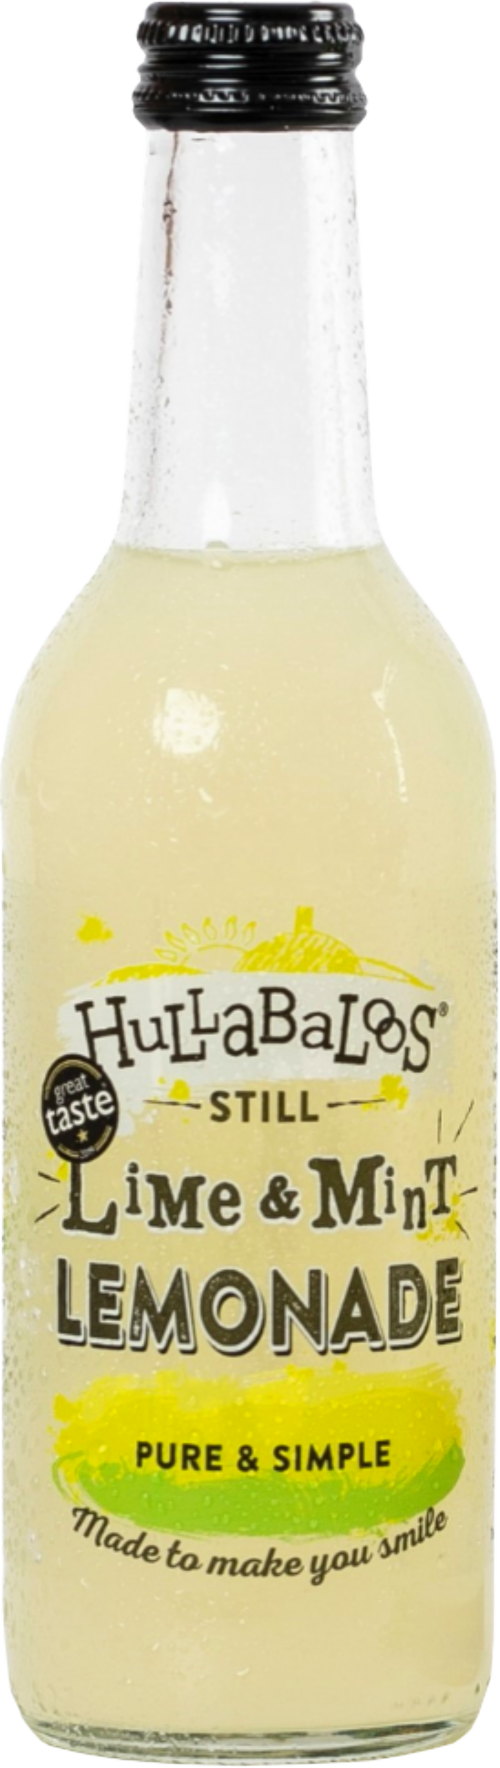 HULLABALOOS Still Lime & Mint Lemonade 330ml